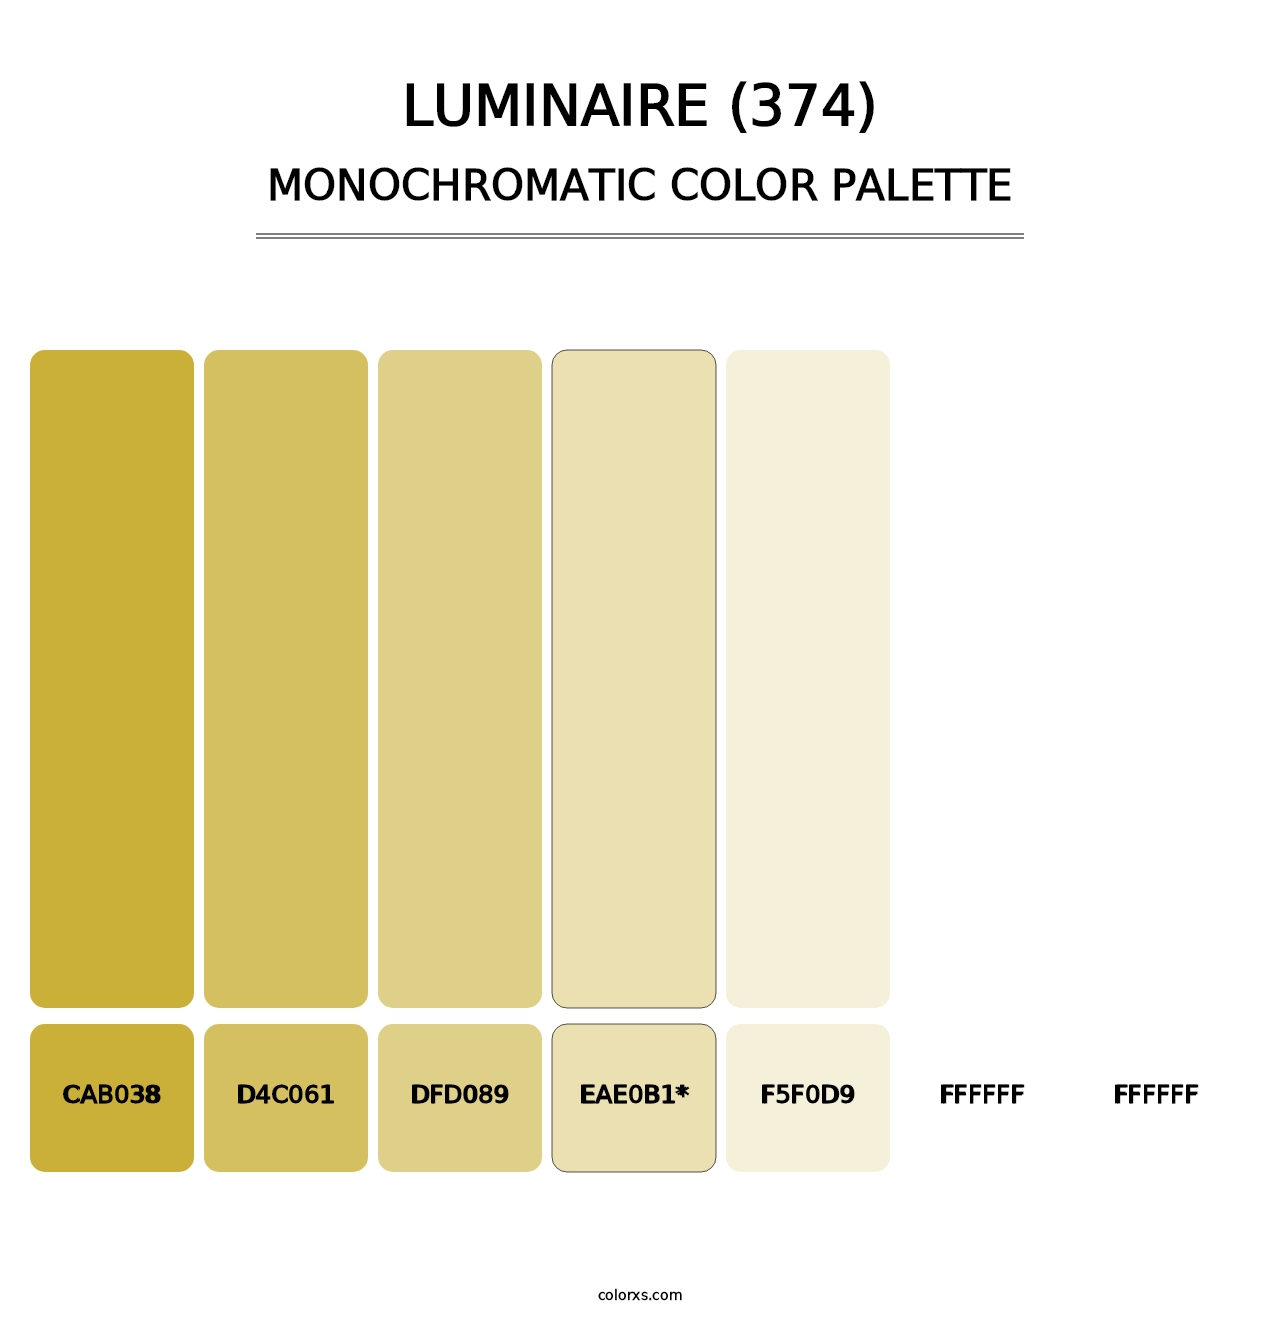 Luminaire (374) - Monochromatic Color Palette